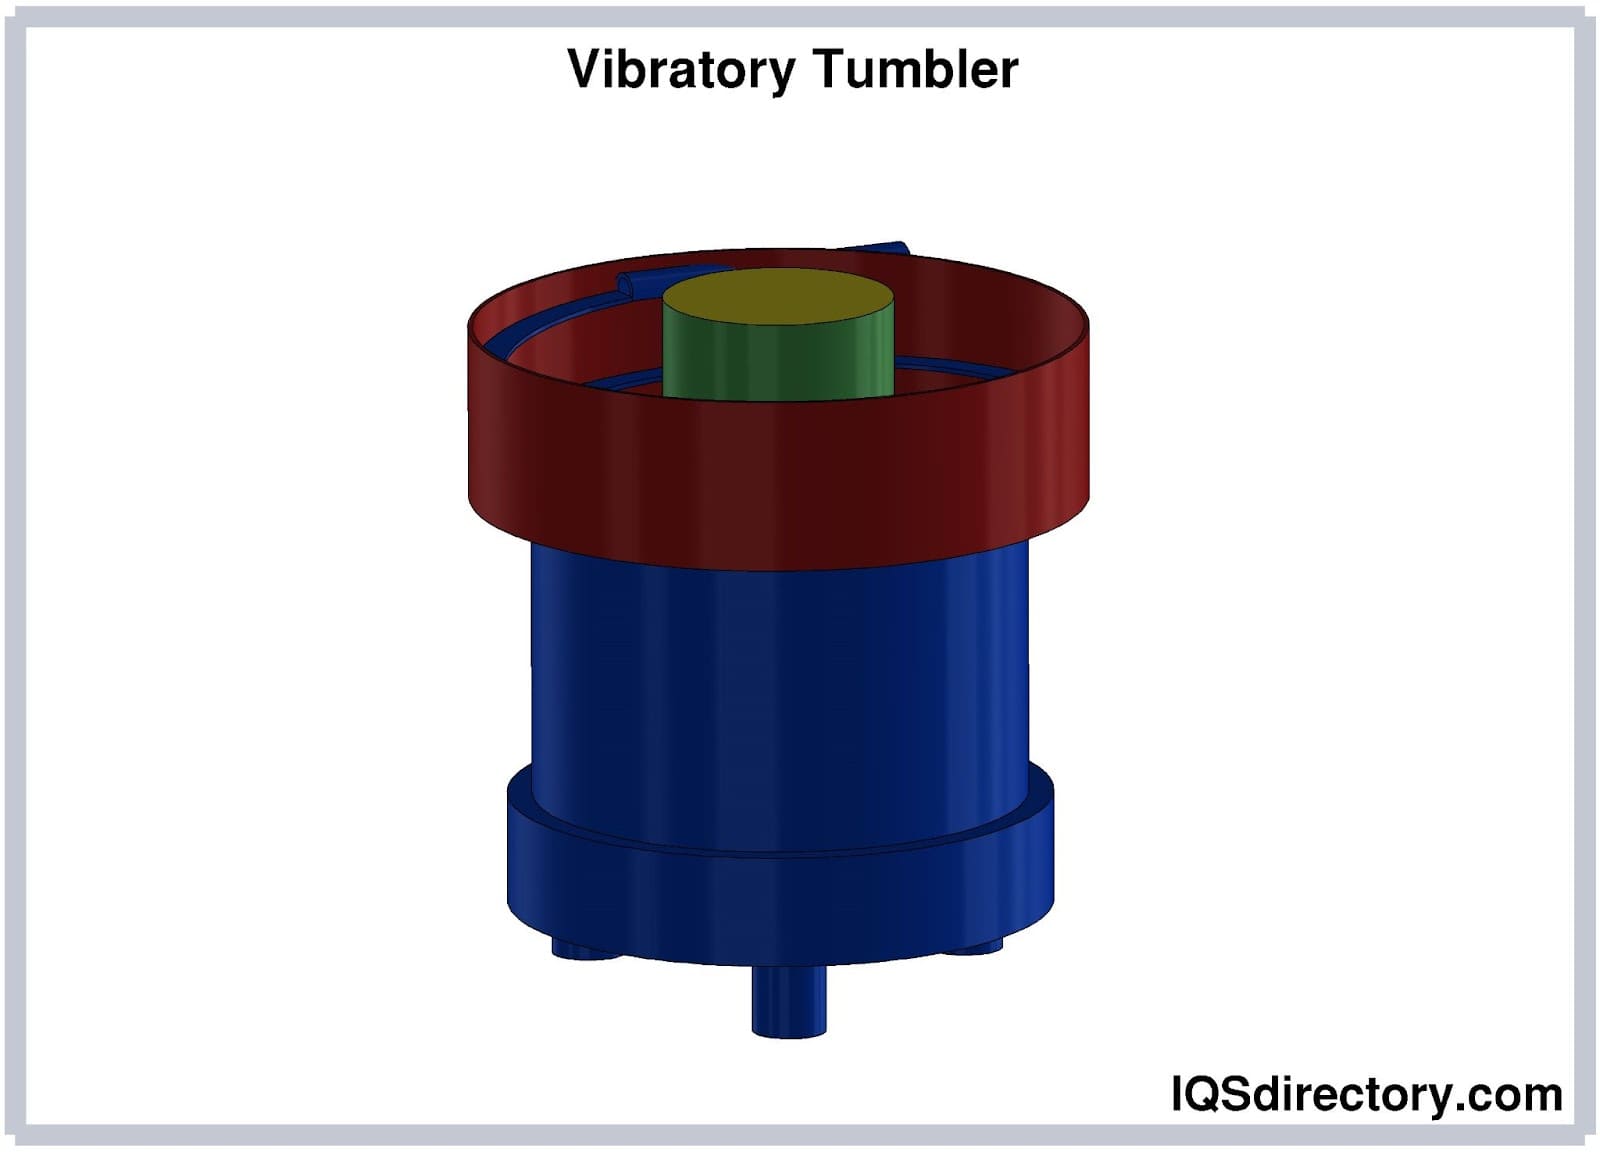 The Best Ultrasonic VS Rotary VS Vibratory Tumbler Comparison